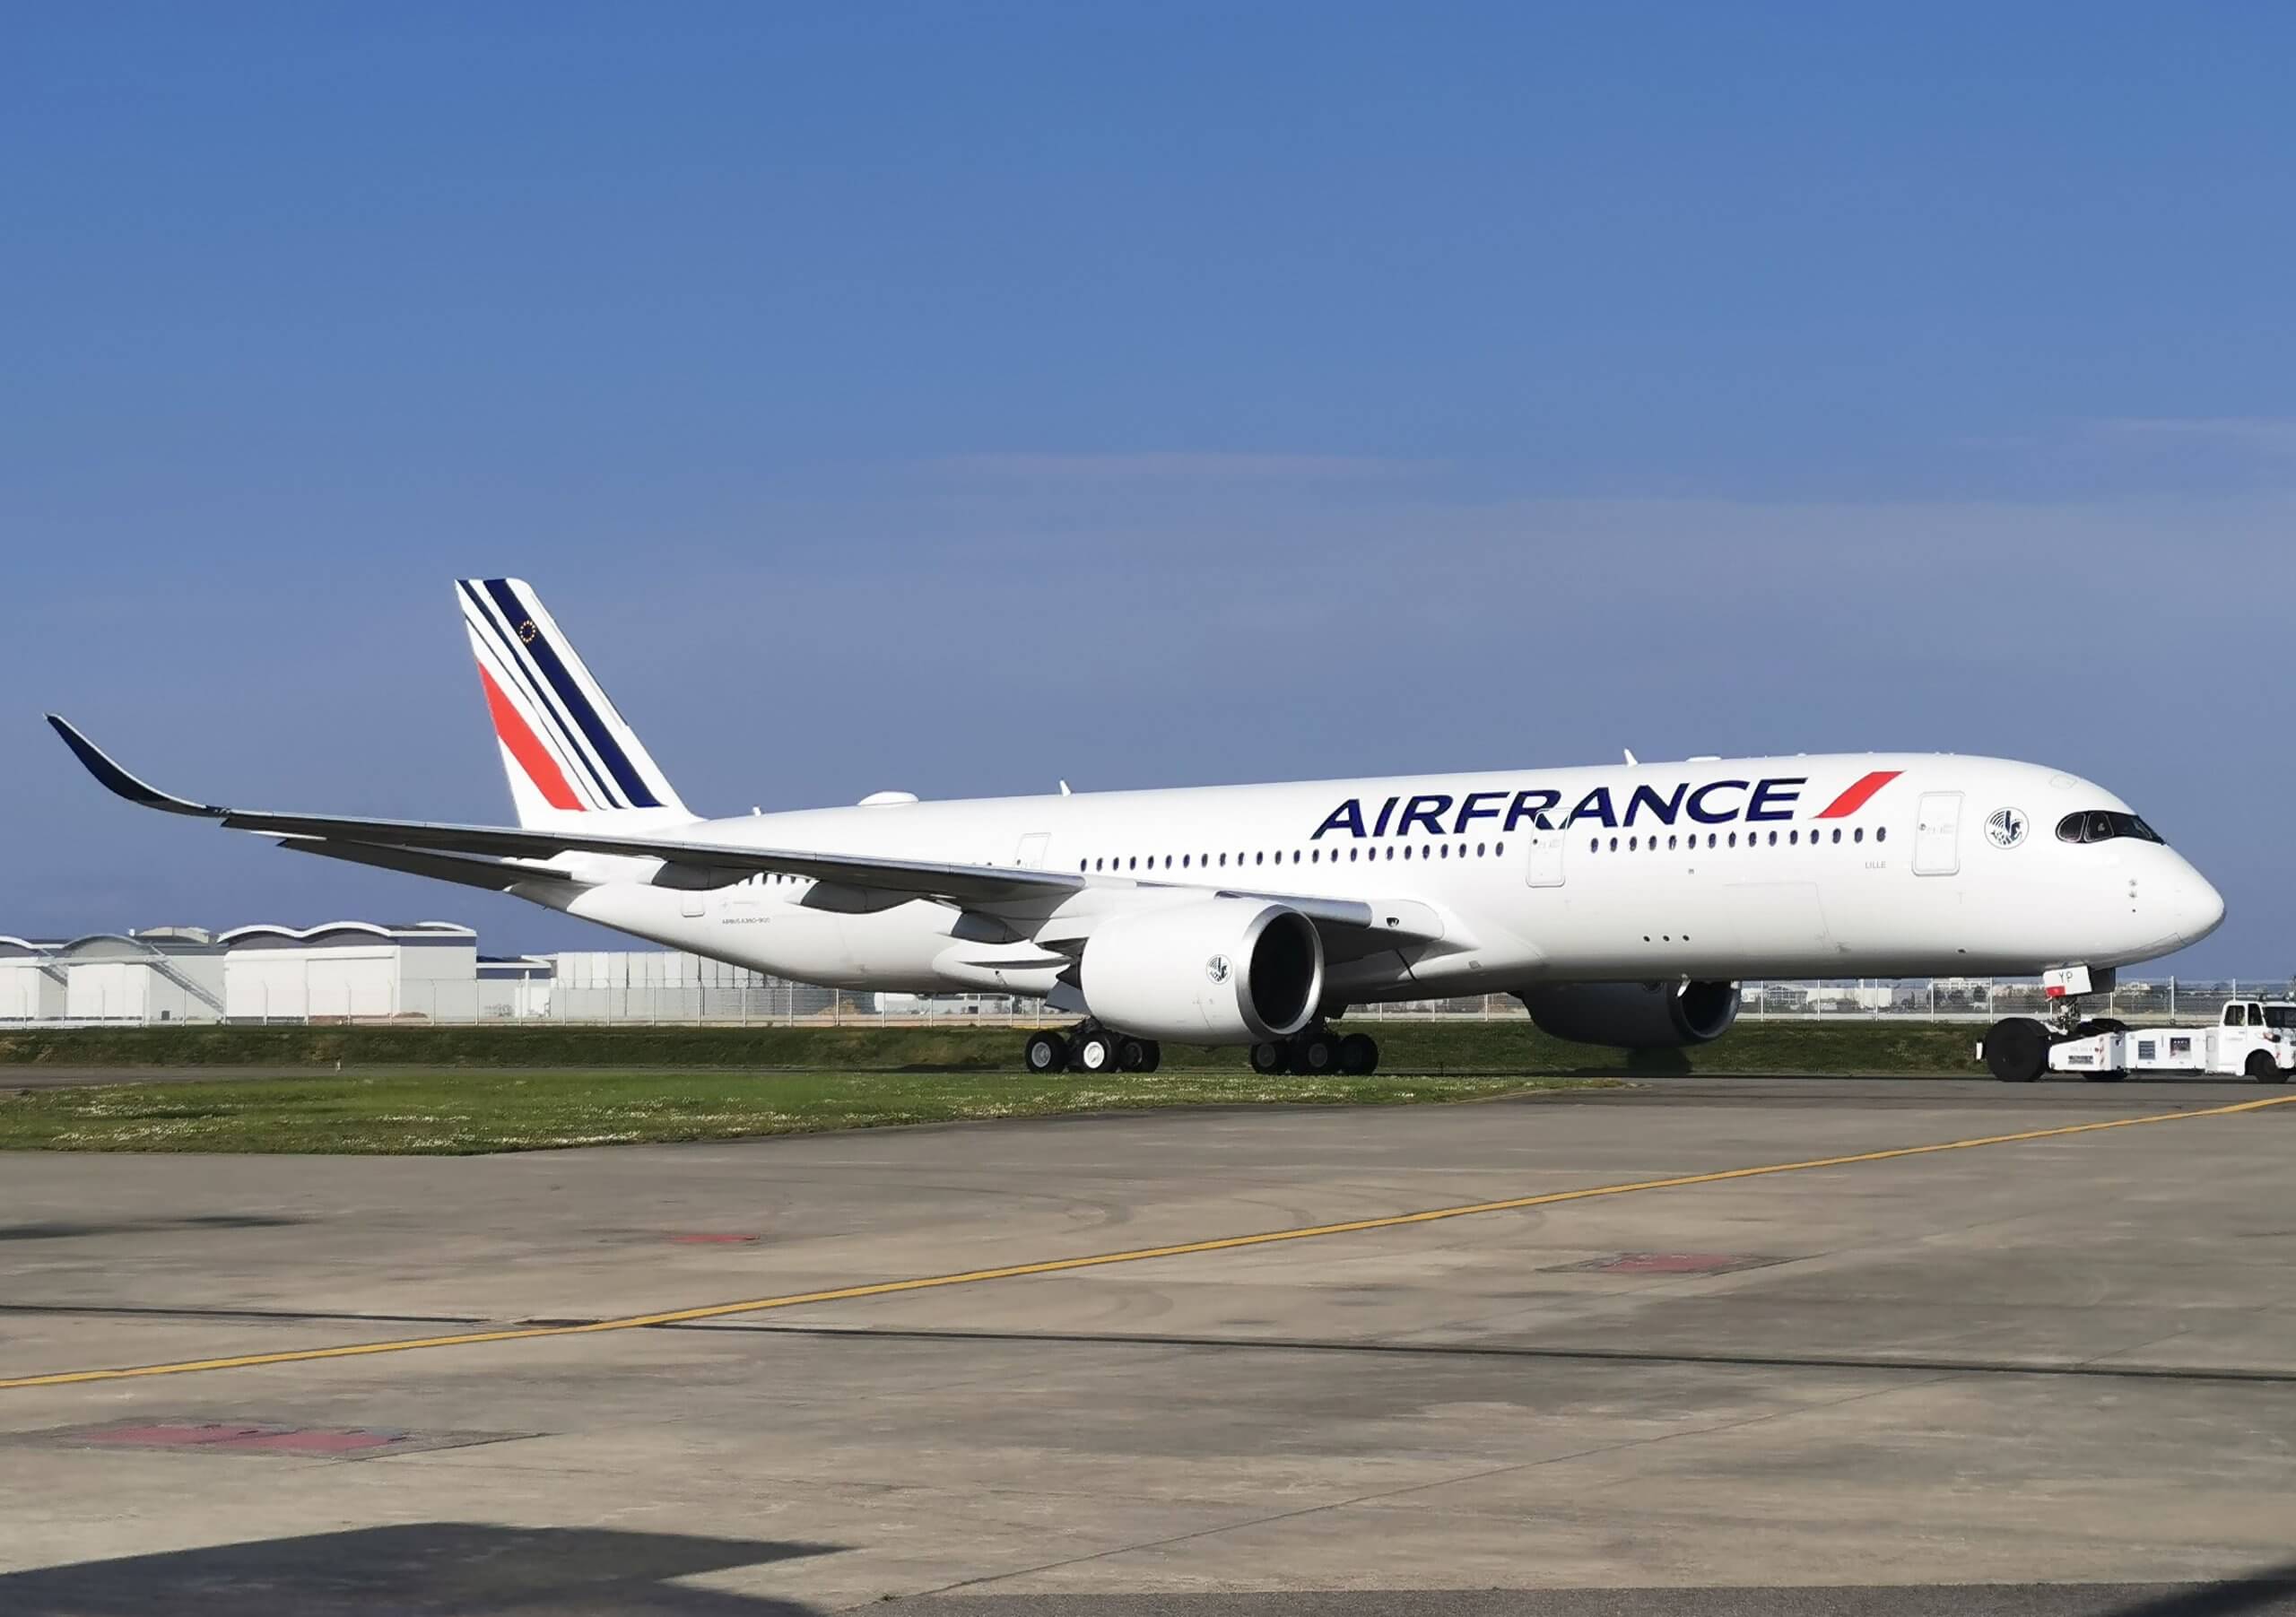 https://jsa.com/wp-content/uploads/2022/04/Air-France-Delivery-April-2022-Website-Image-2-scaled.jpg